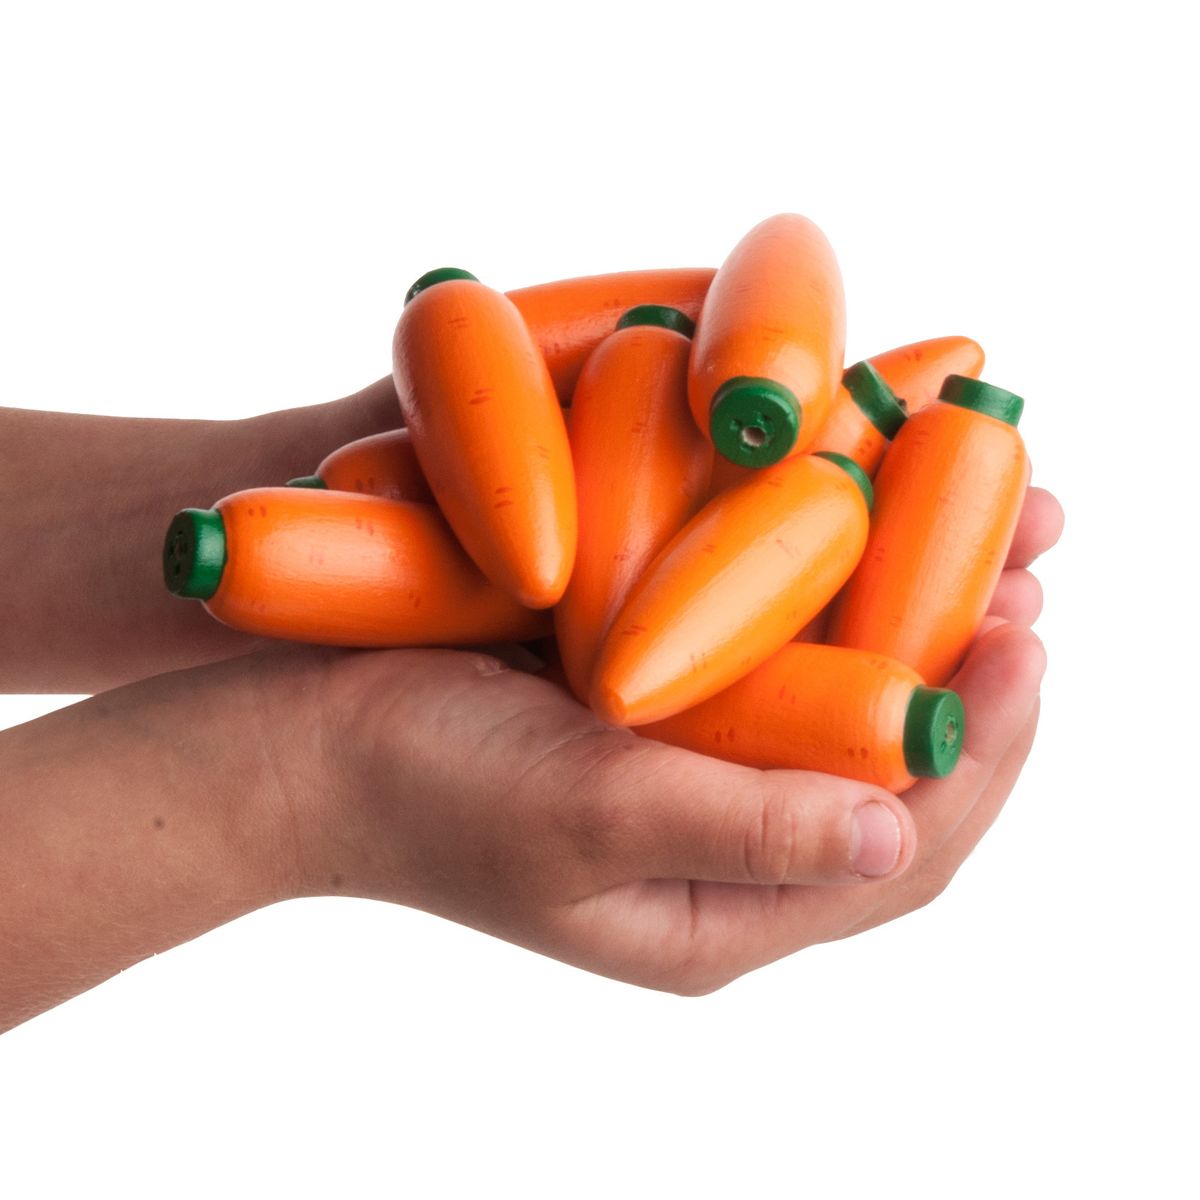 Счетный материал "12 морковок" в льняном мешочке, Леснушки